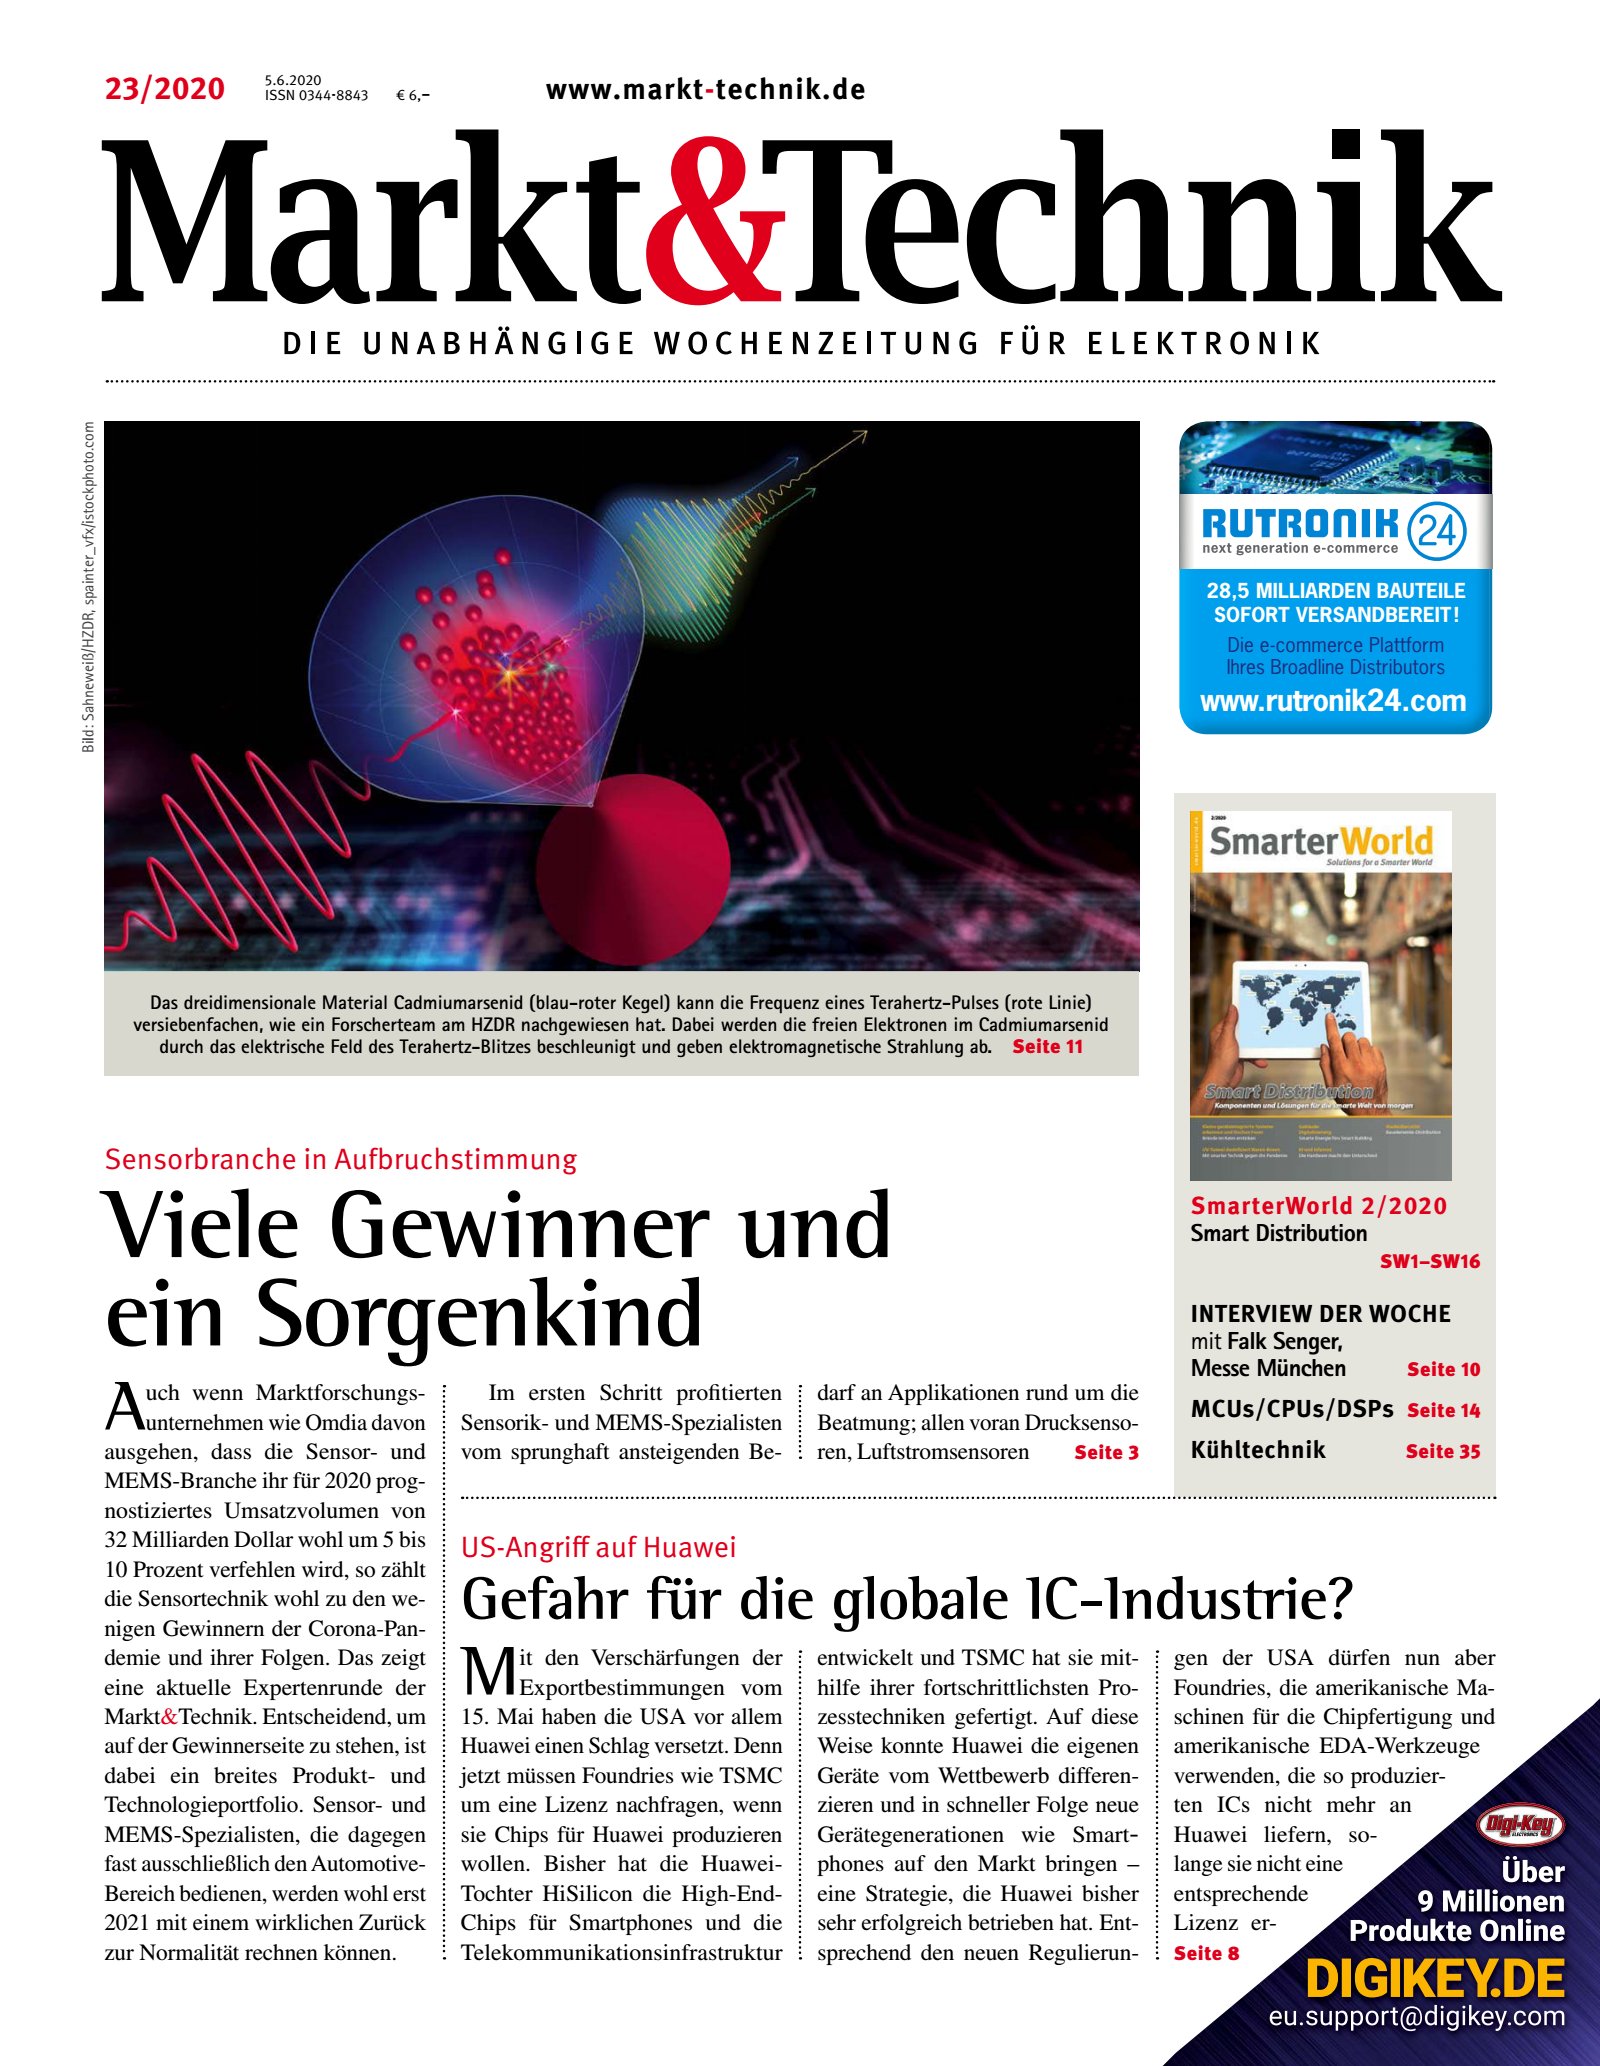 Markt&Technik 23/2020 Digital